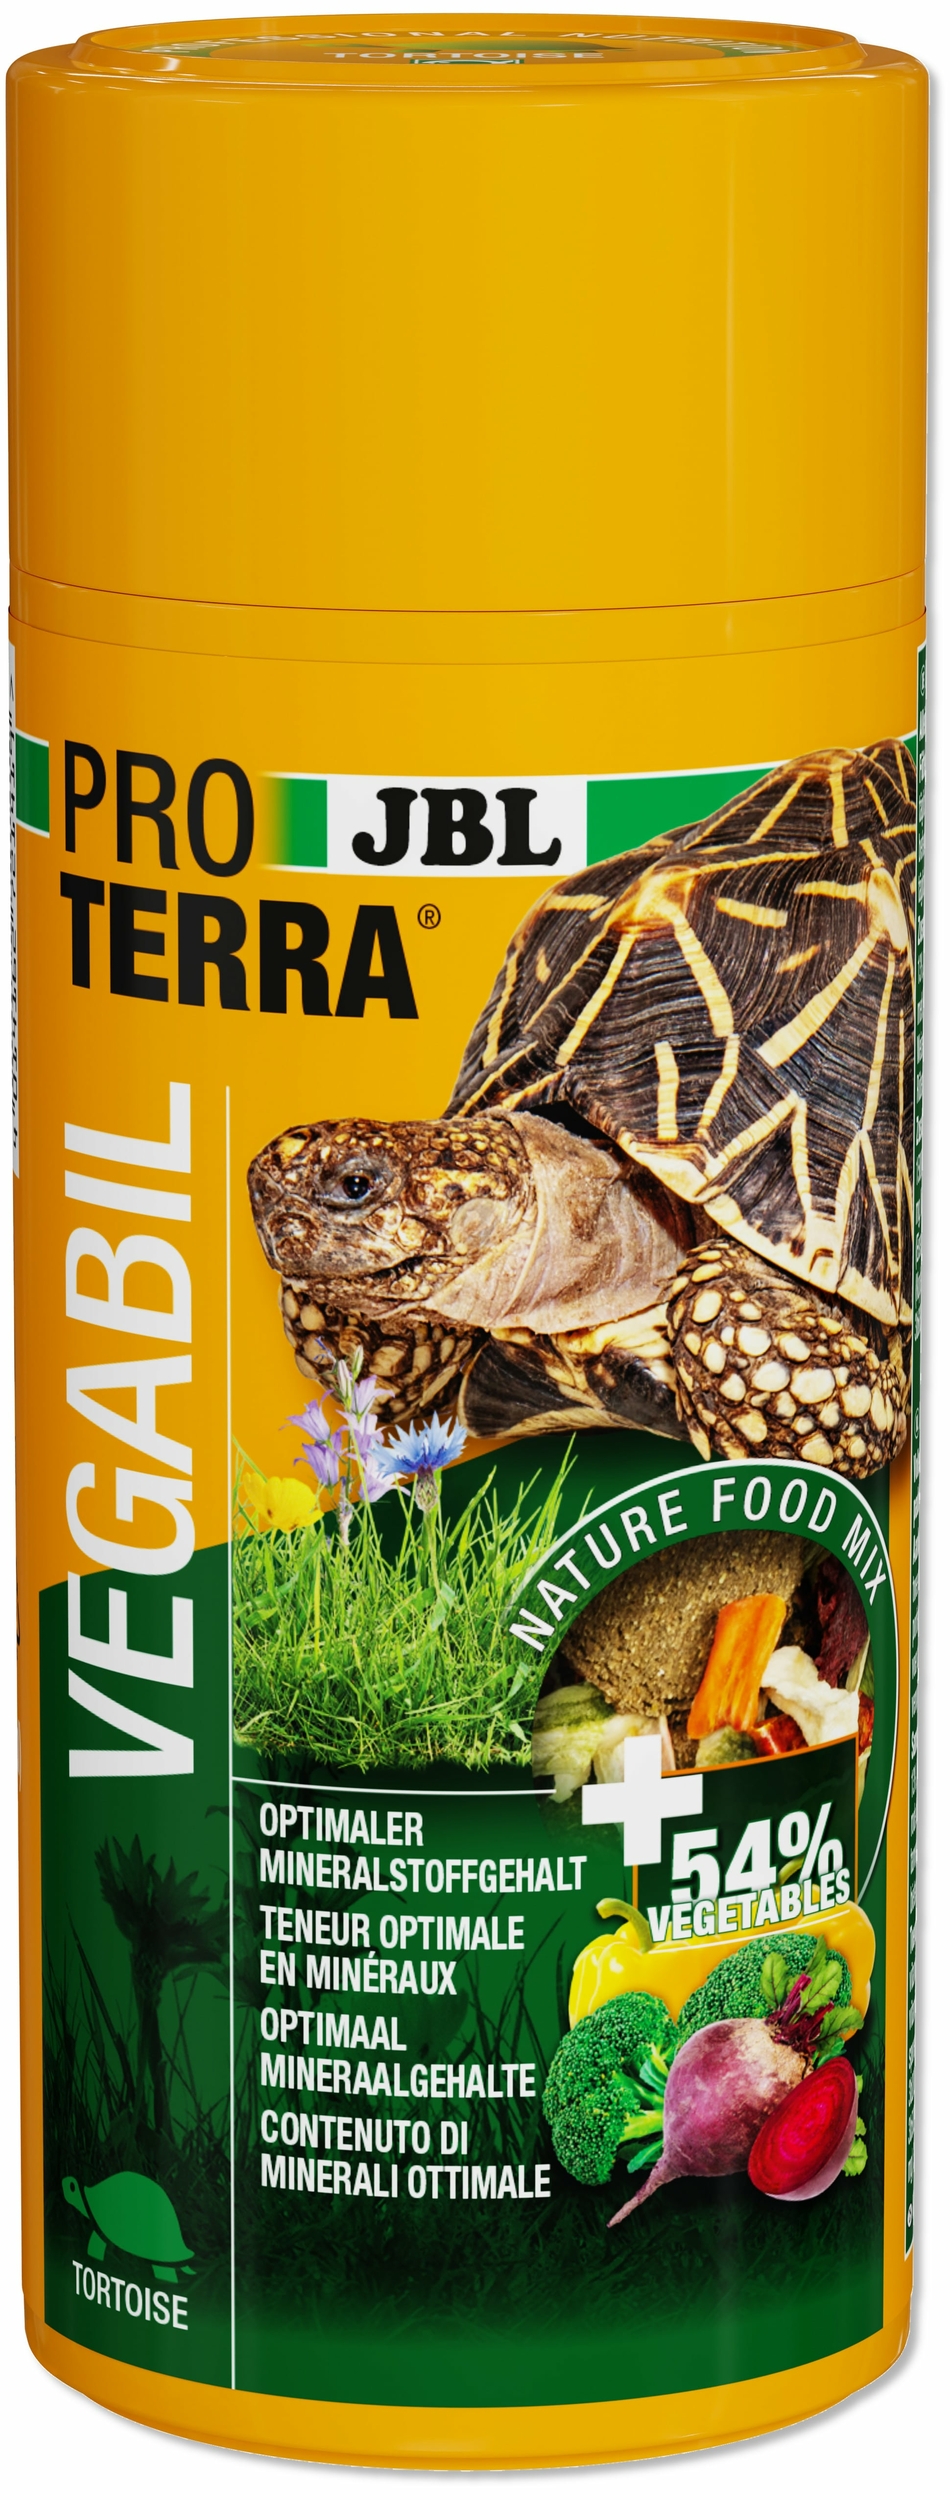 jbl-proterra-vegabil-250-ml-nourriture-de-base-sous-forme-de-chips-au-legumes-pour-tortues-terrestres-min